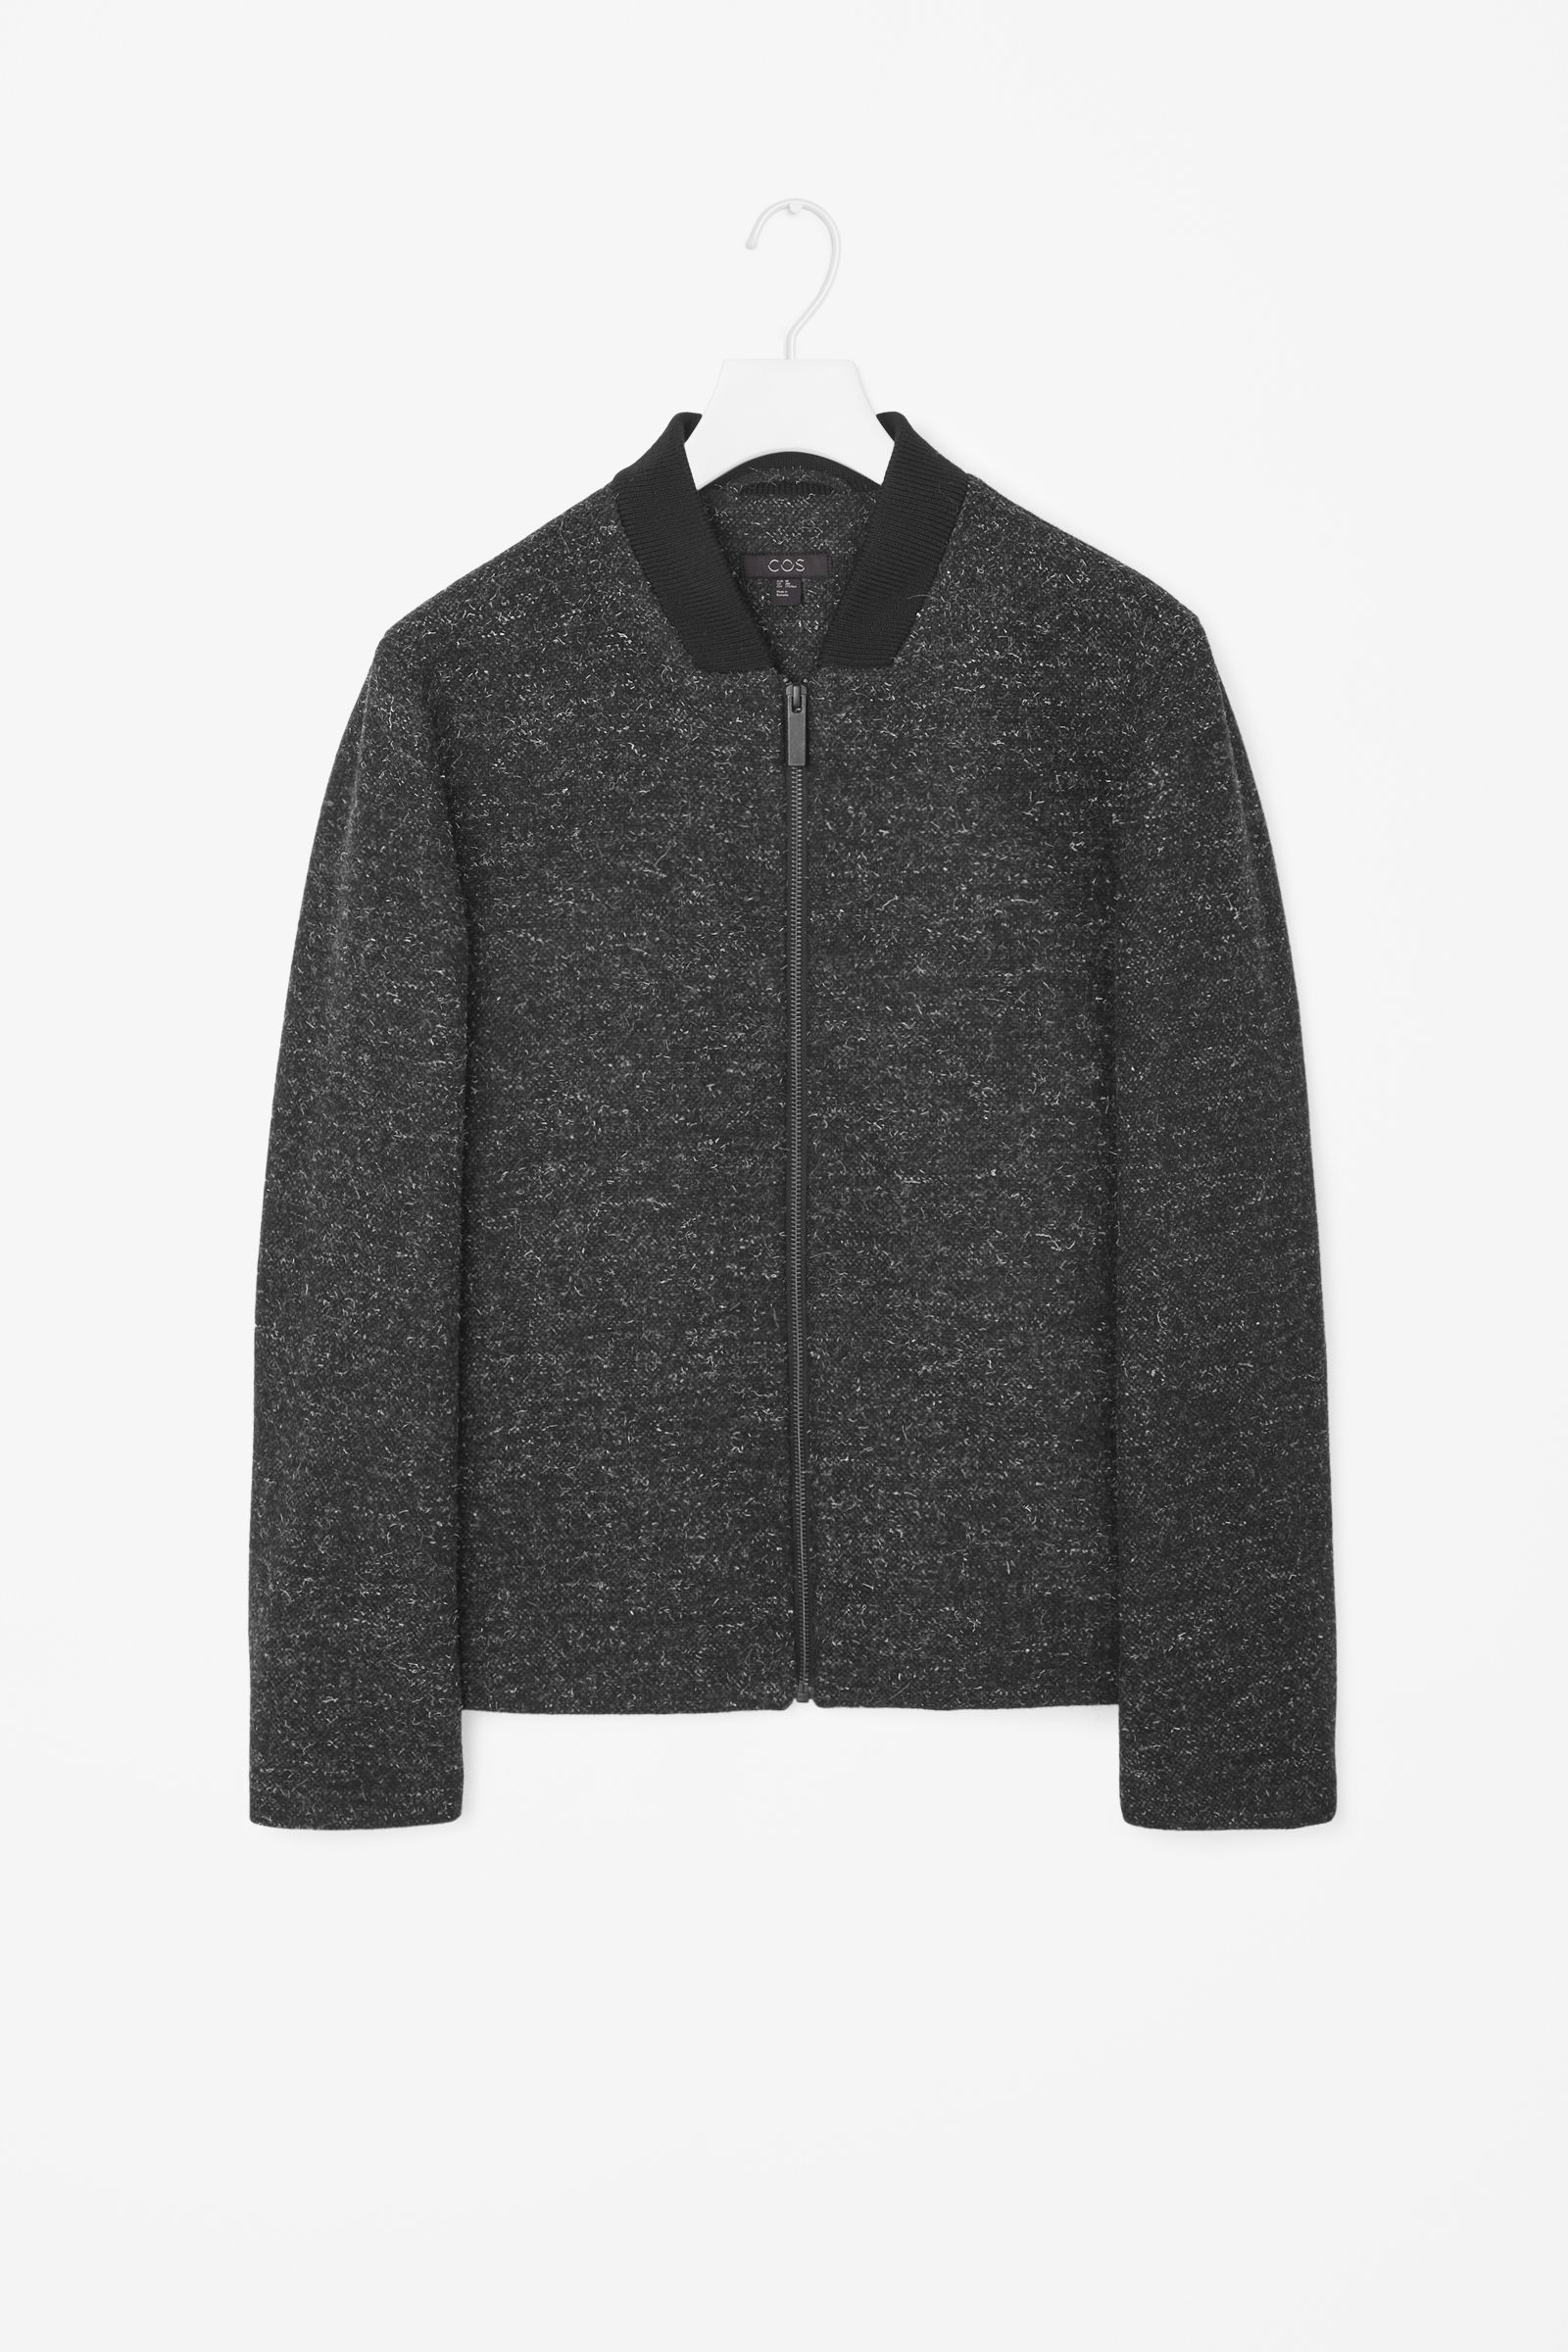 Cos Wool Zip-up Jacket in Gray for Men (Dark Grey) | Lyst